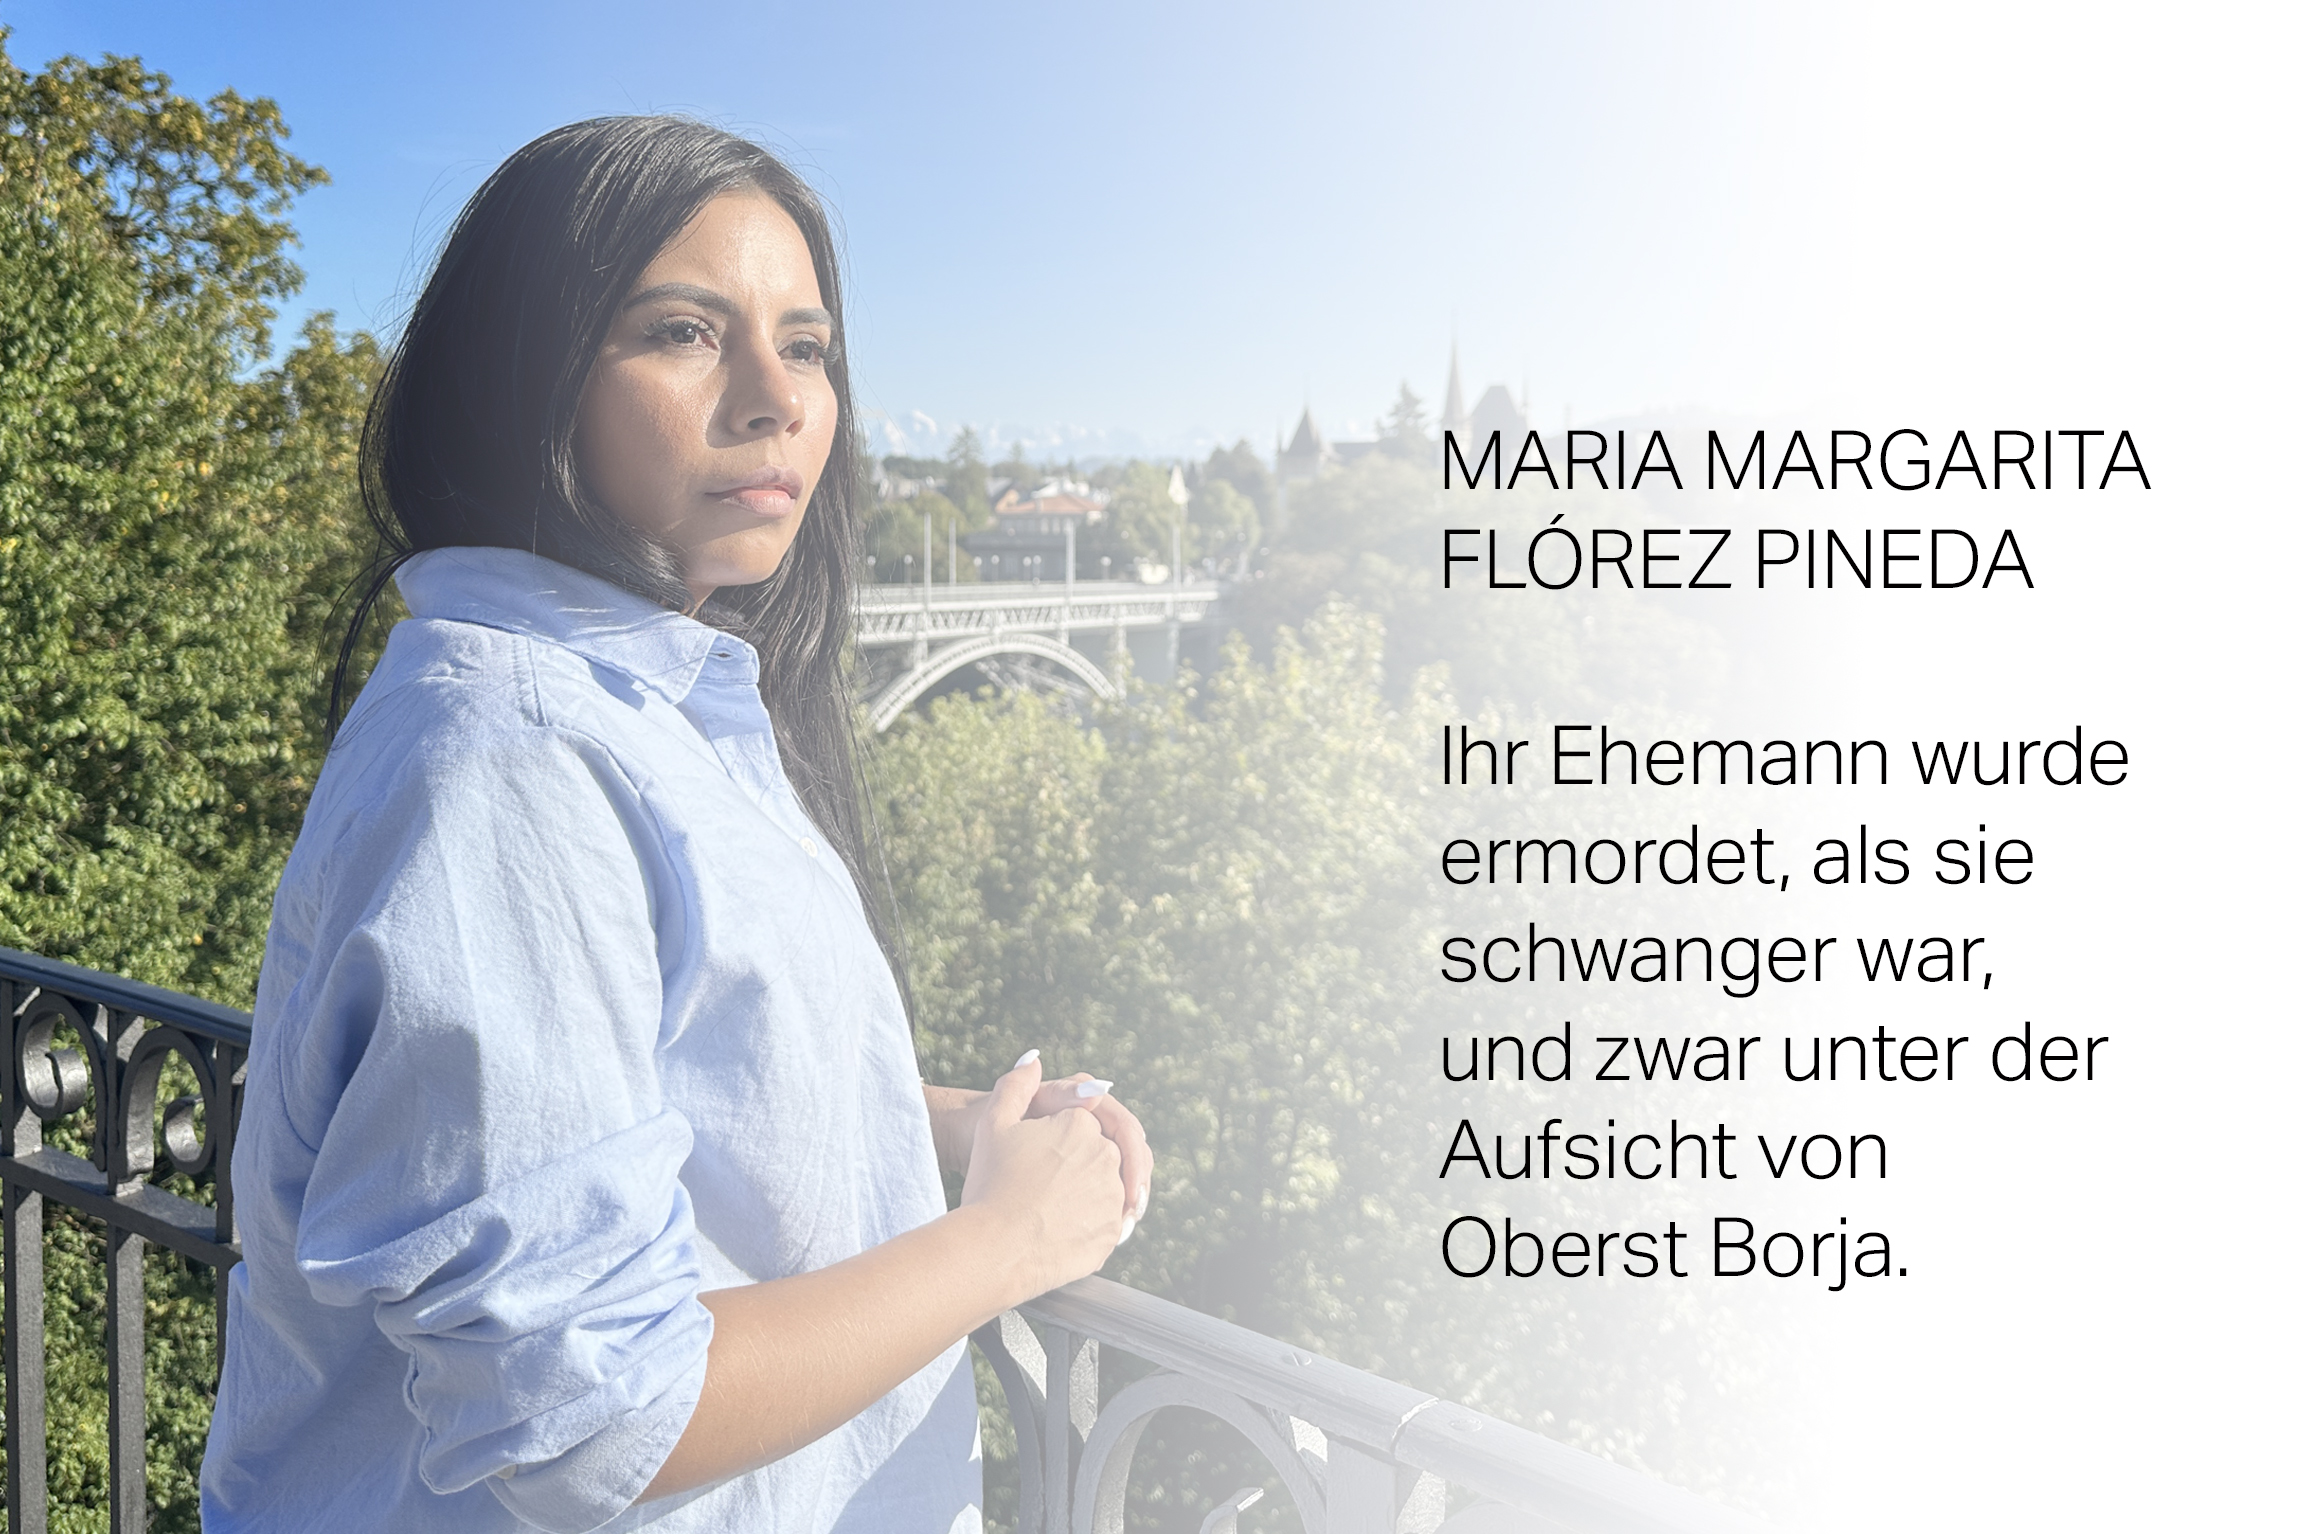 Maria Margarita Florez Pineda in Bern